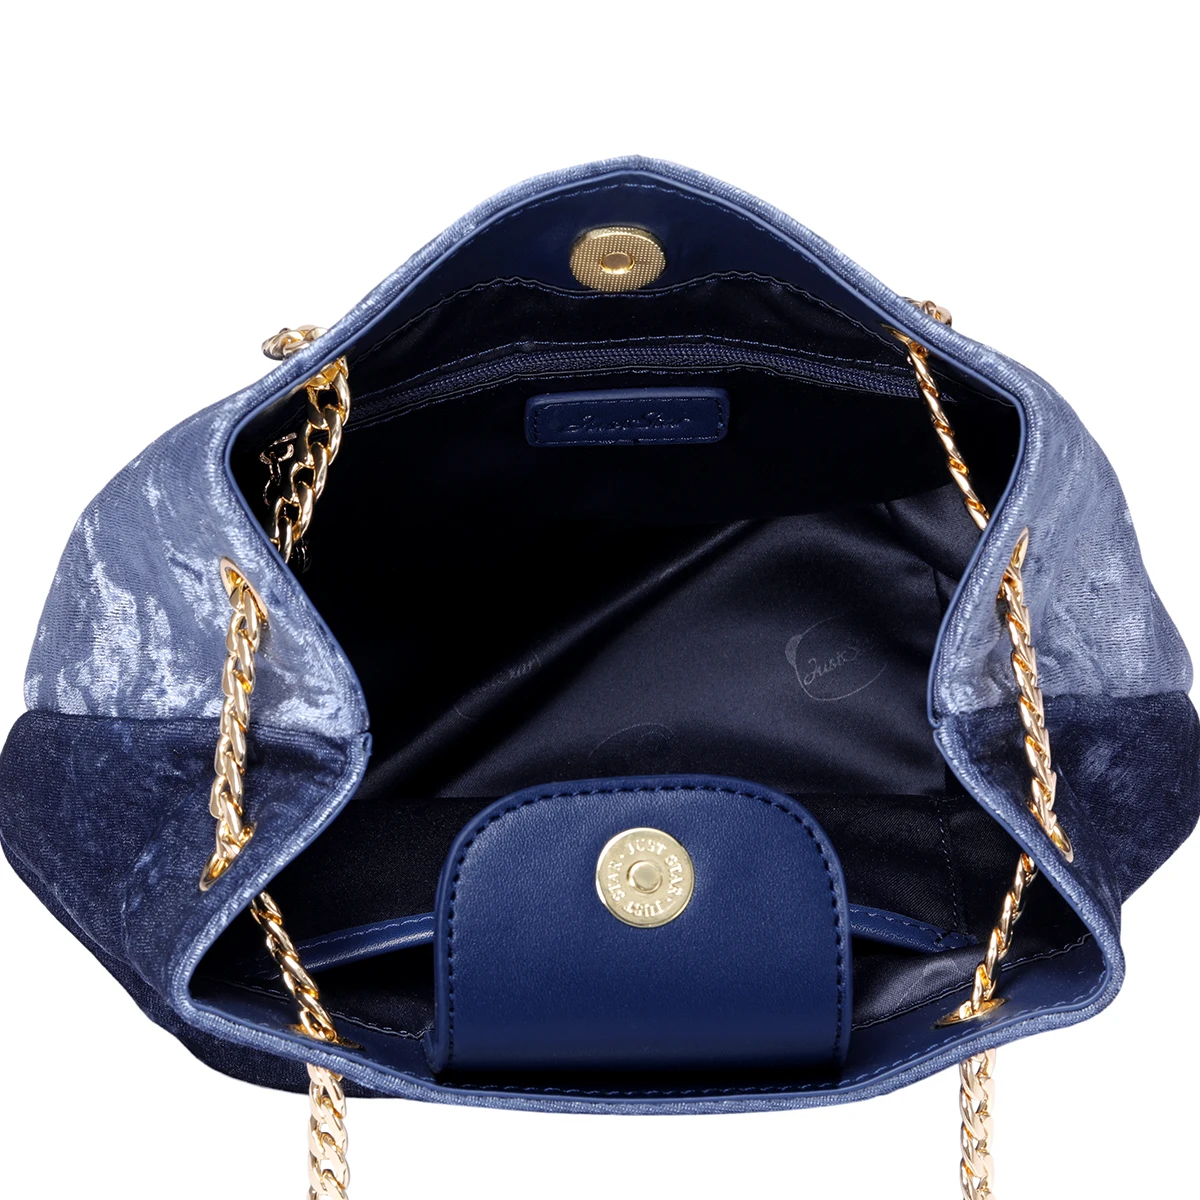 Просто звезда бренд велюровая сумка кошелек китайский стиль Вышивка Птицы кисточкой женские сумки на плечо